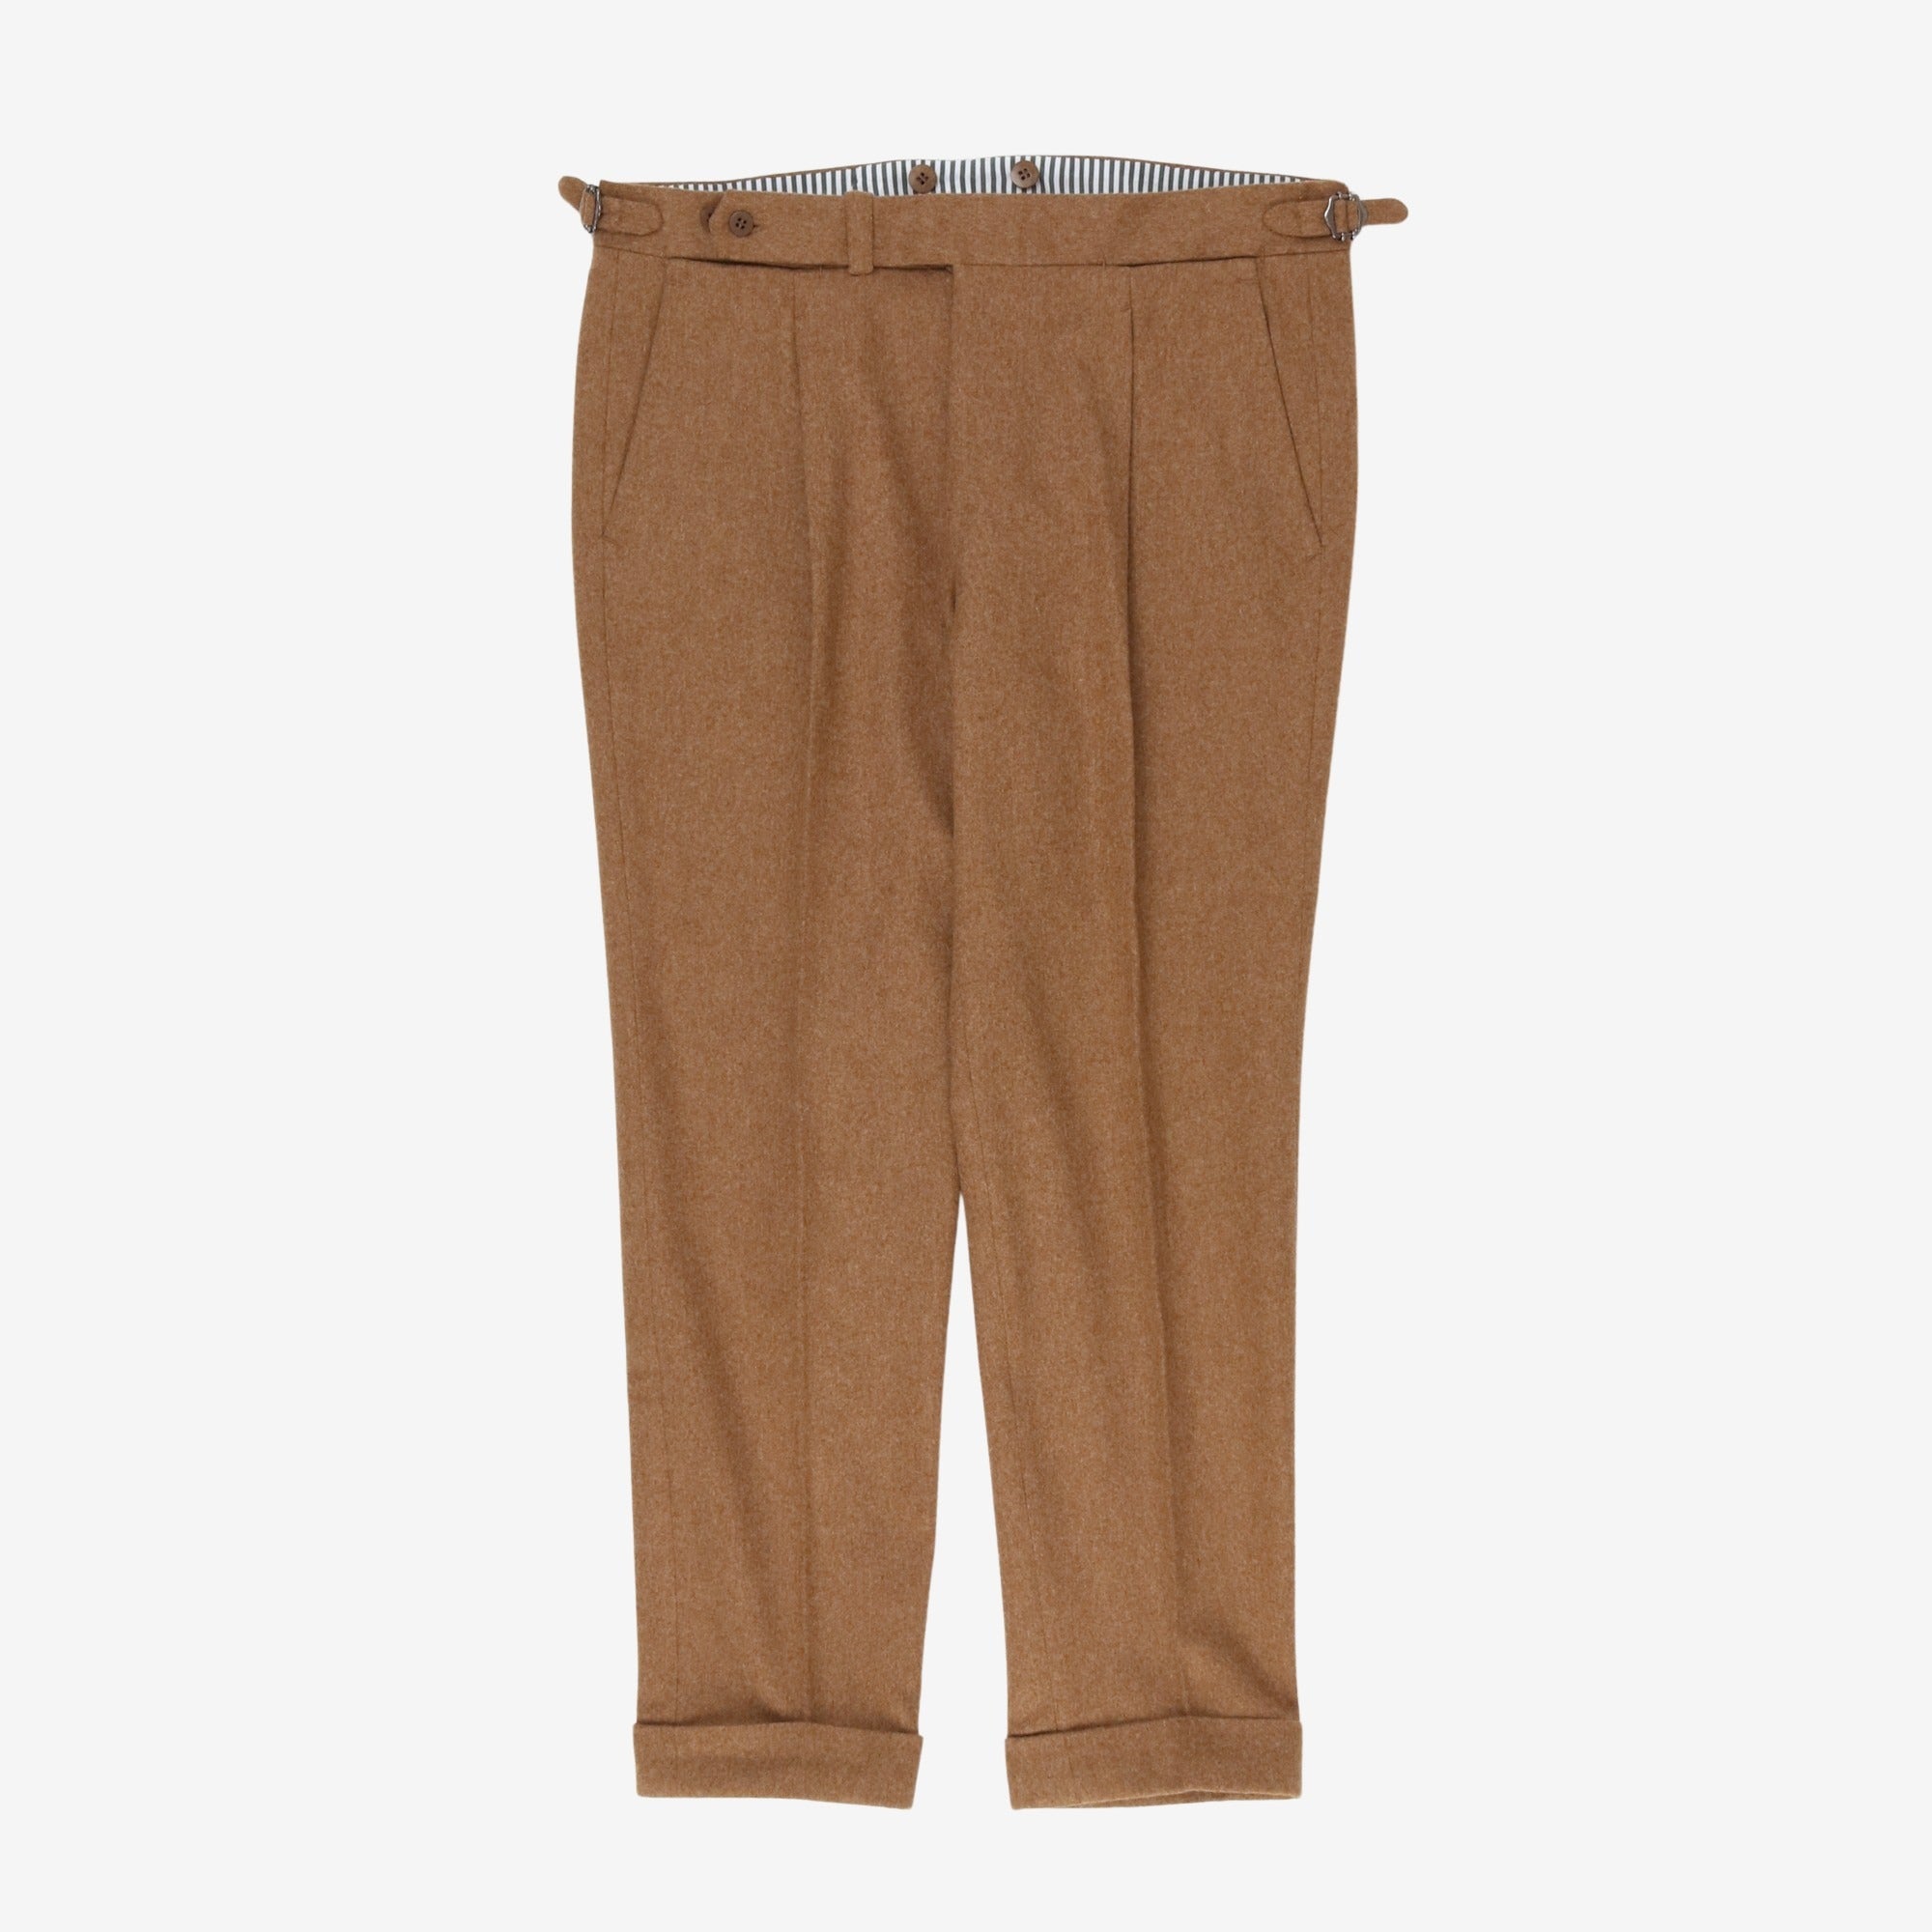 Bespoke Wool Pleated Trousers (36W x 28L)